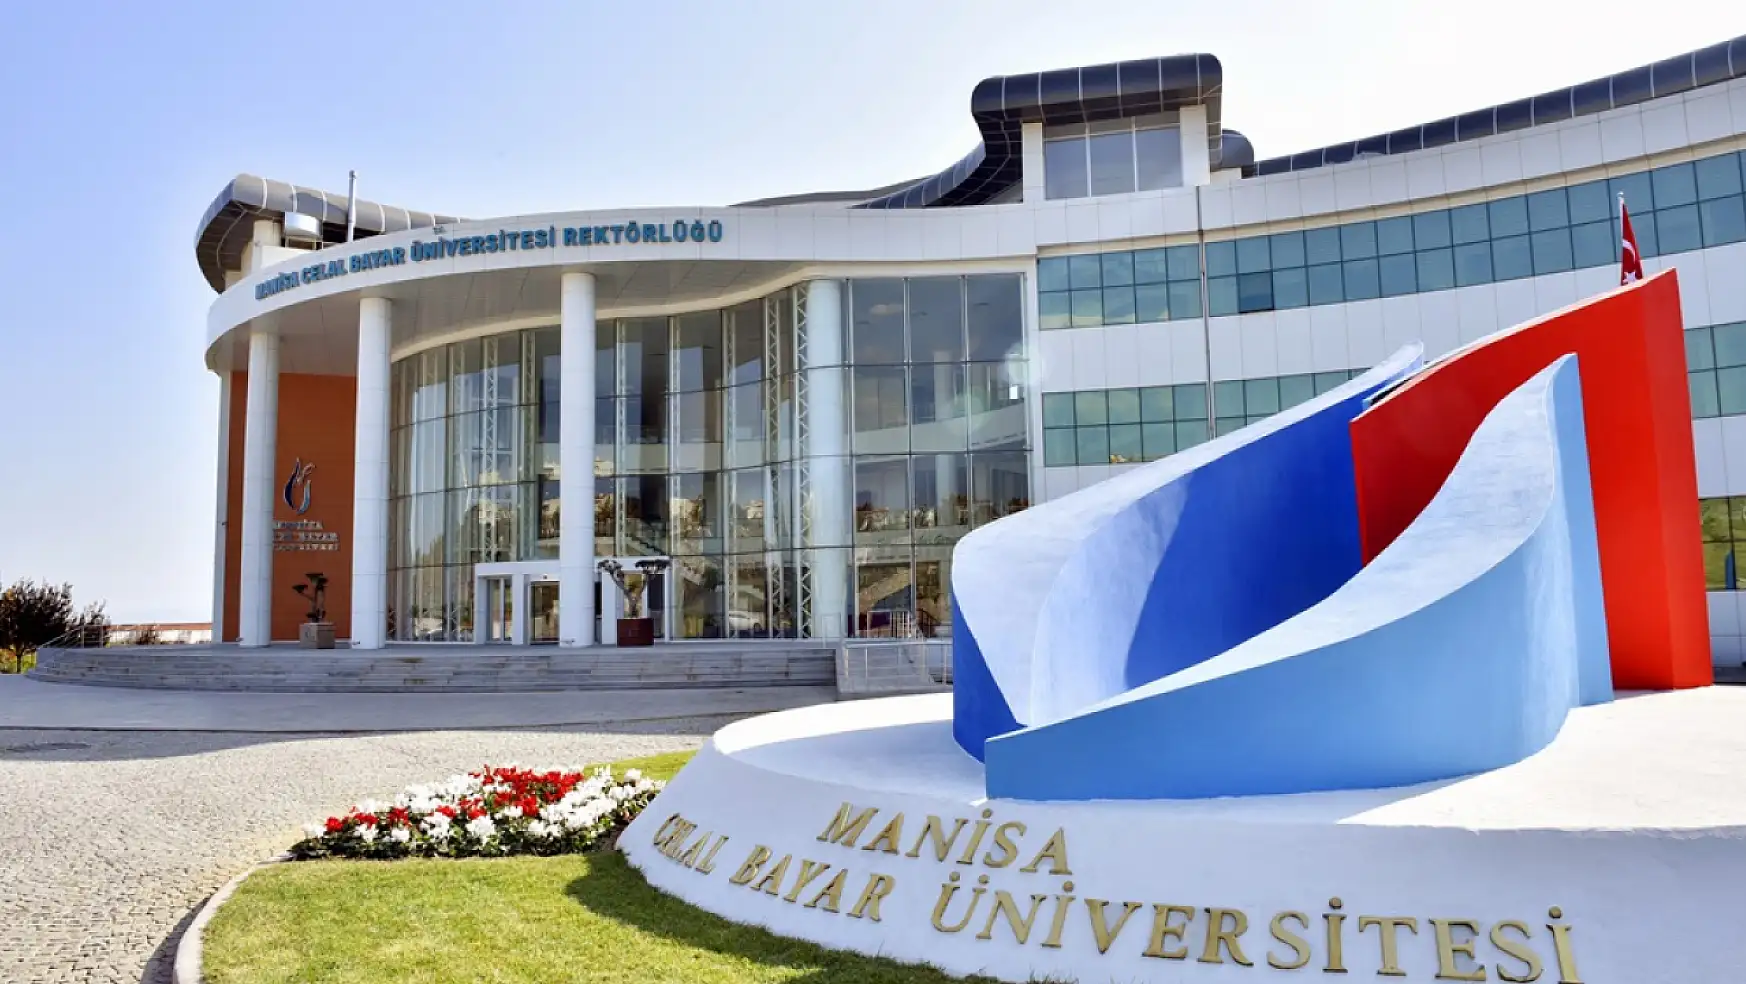 Manisa Celal Bayar Üniversitesi en az lise mezunu 172 personel alımı yapacağını duyurdu